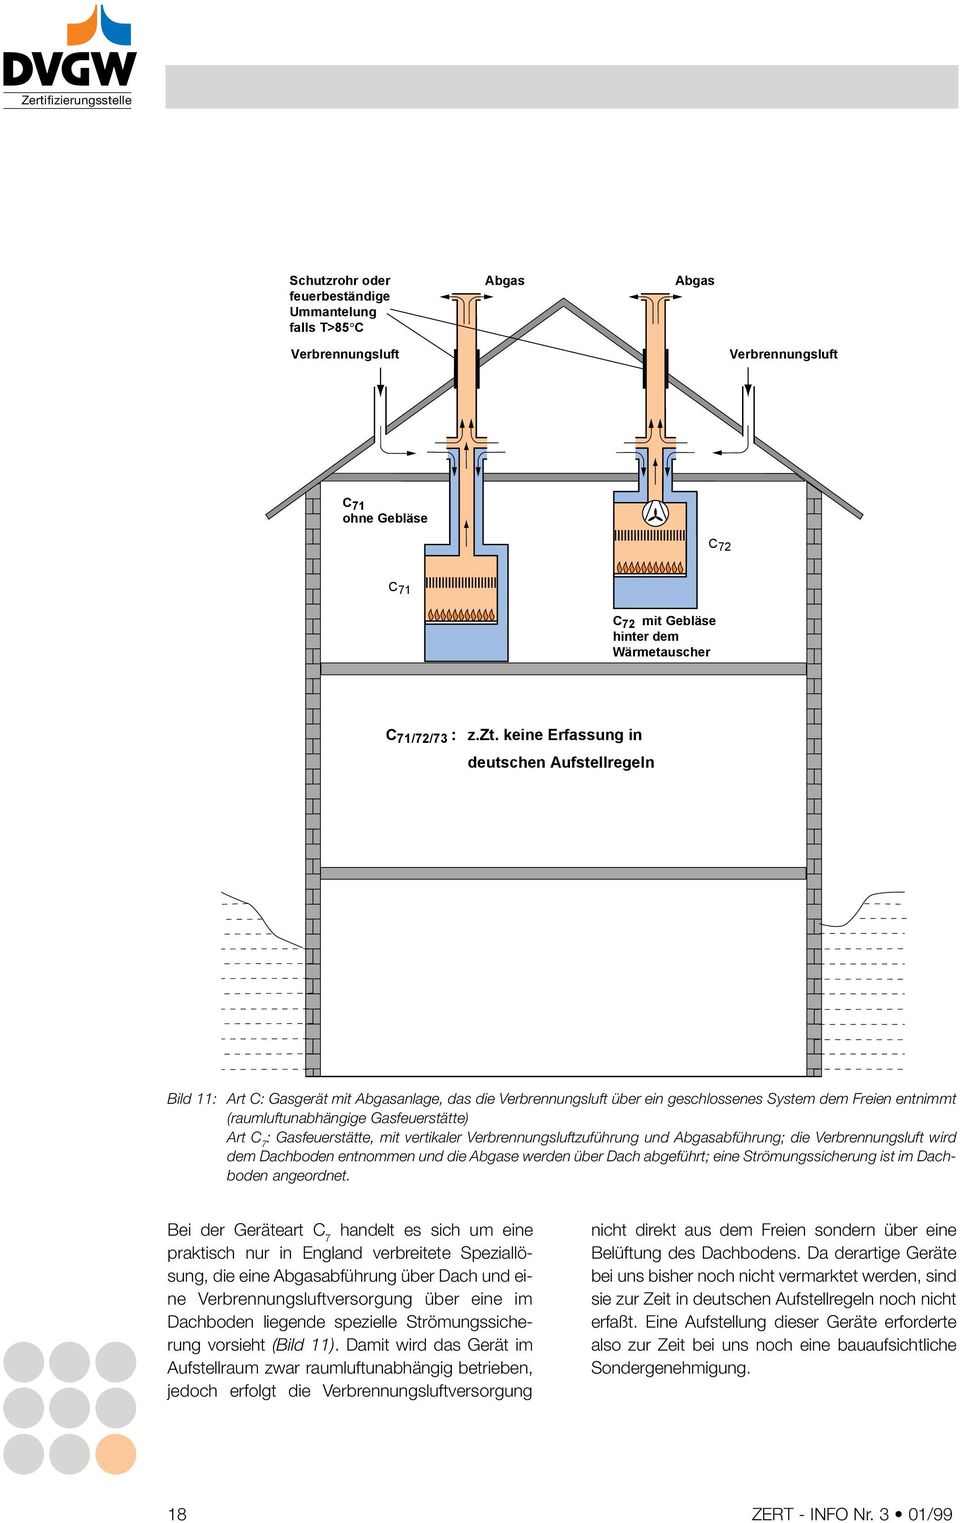 (raumluftunabhängige Gasfeuerstätte) Art C 7 : Gasfeuerstätte mit vertikaler Verbrennungsluftzuführung und abführung; die Verbrennungsluft wird dem Dachboden entnommen und die e werden über Dach